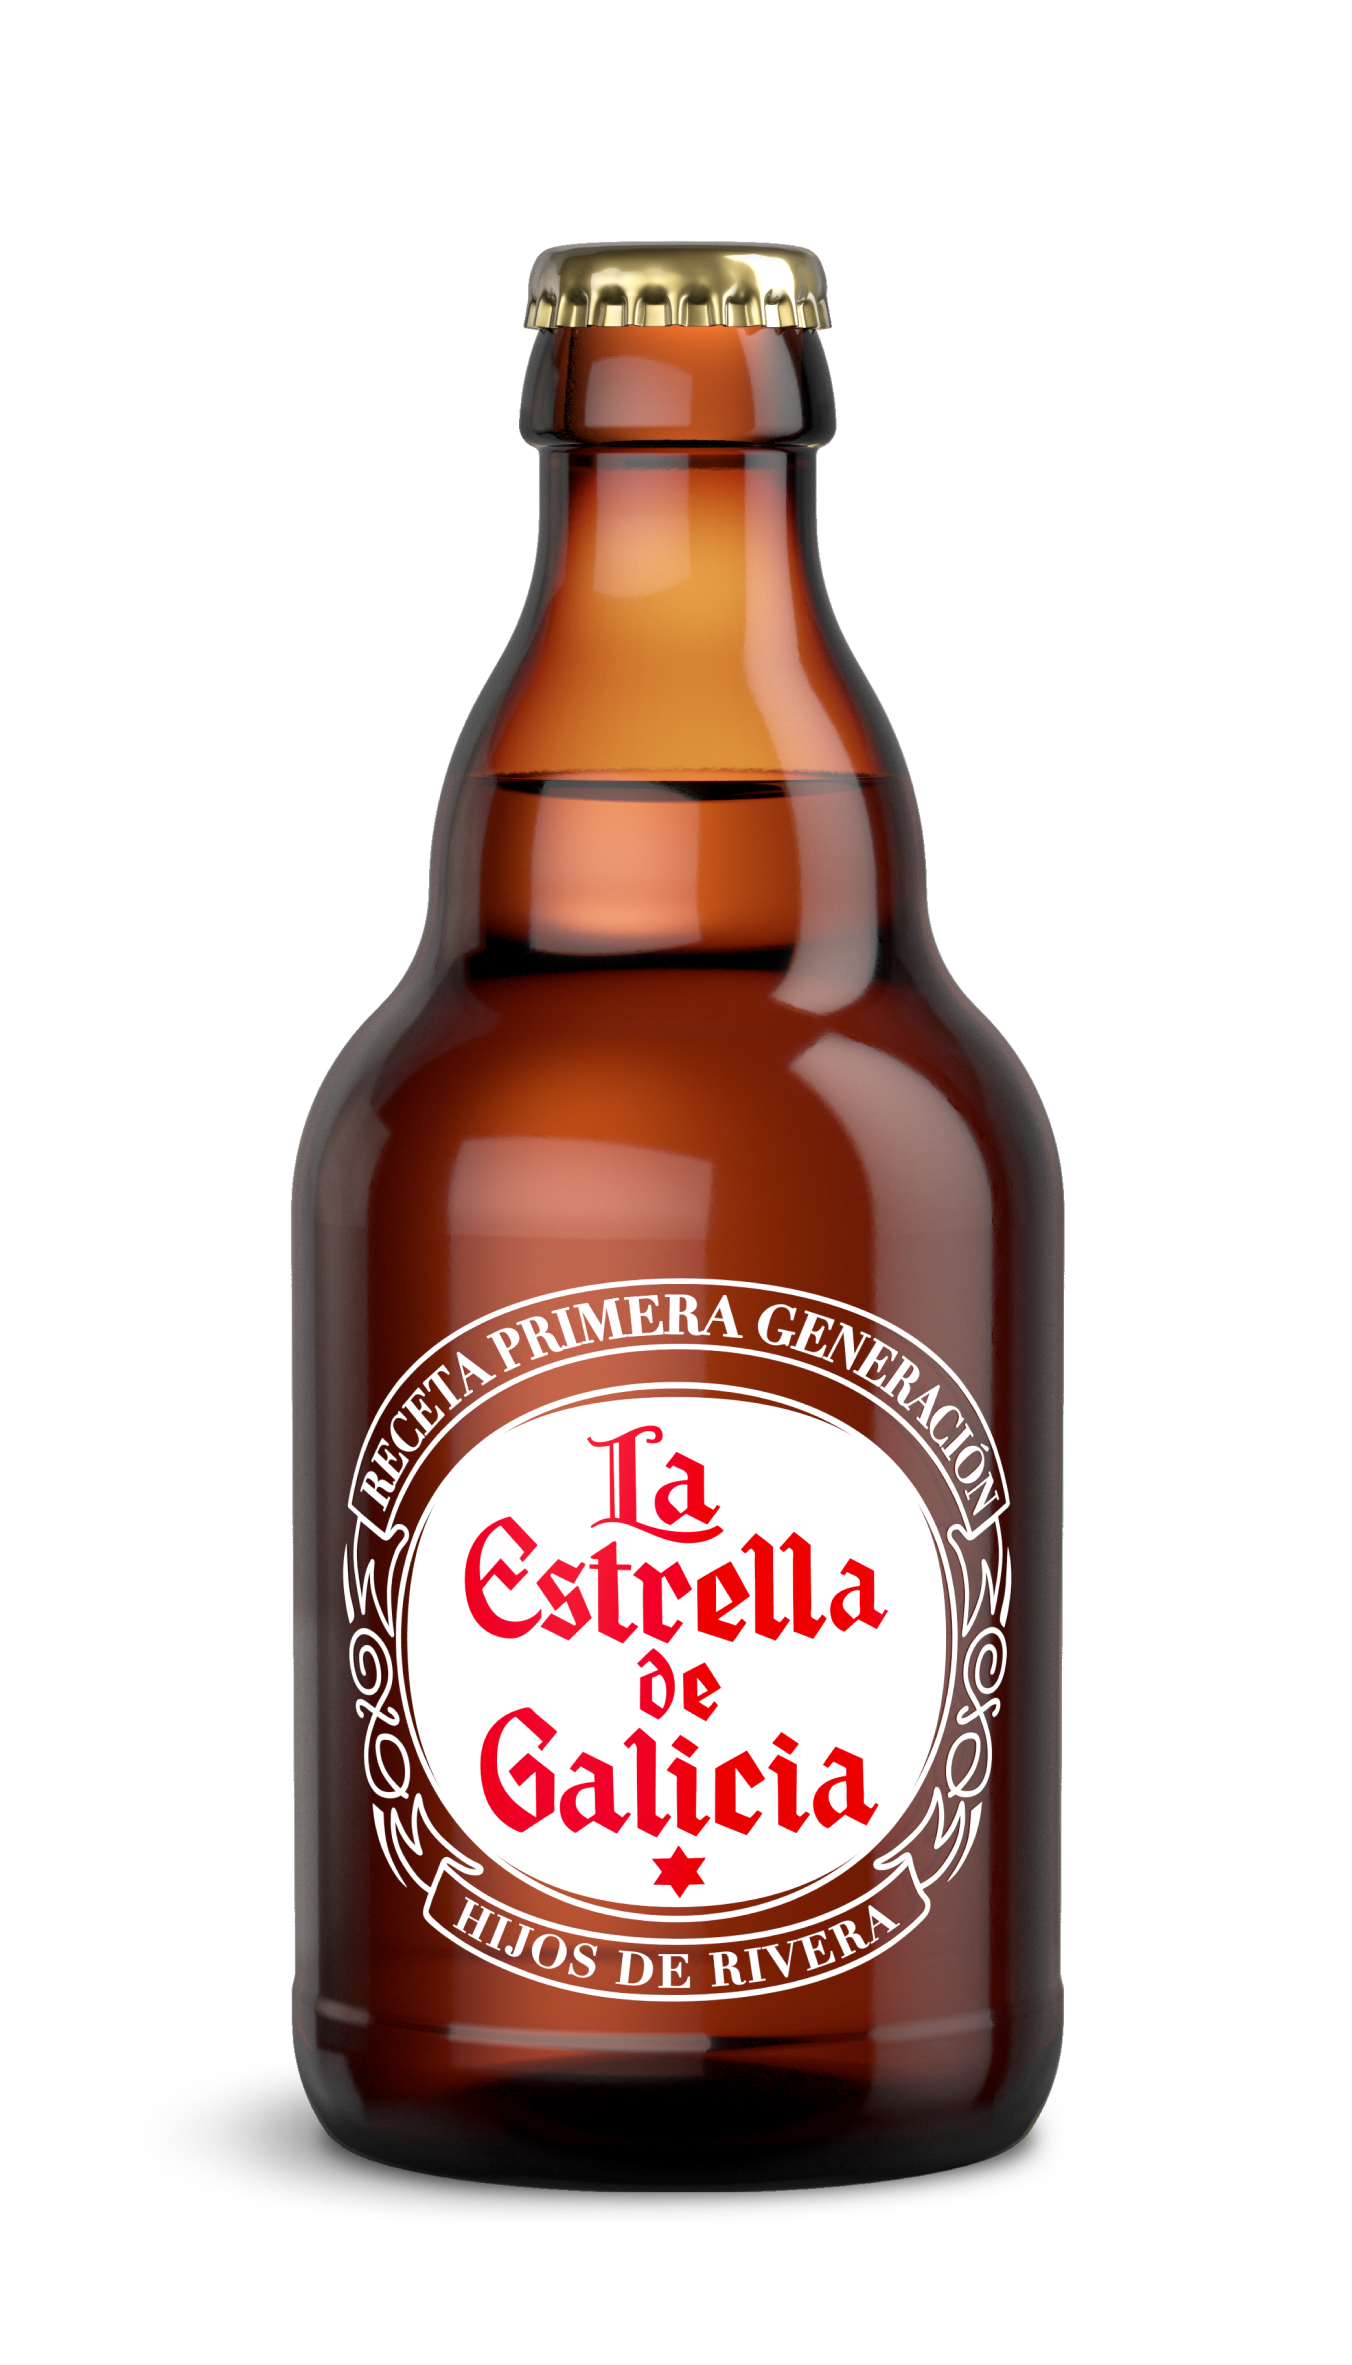 La Estrella de Galicia